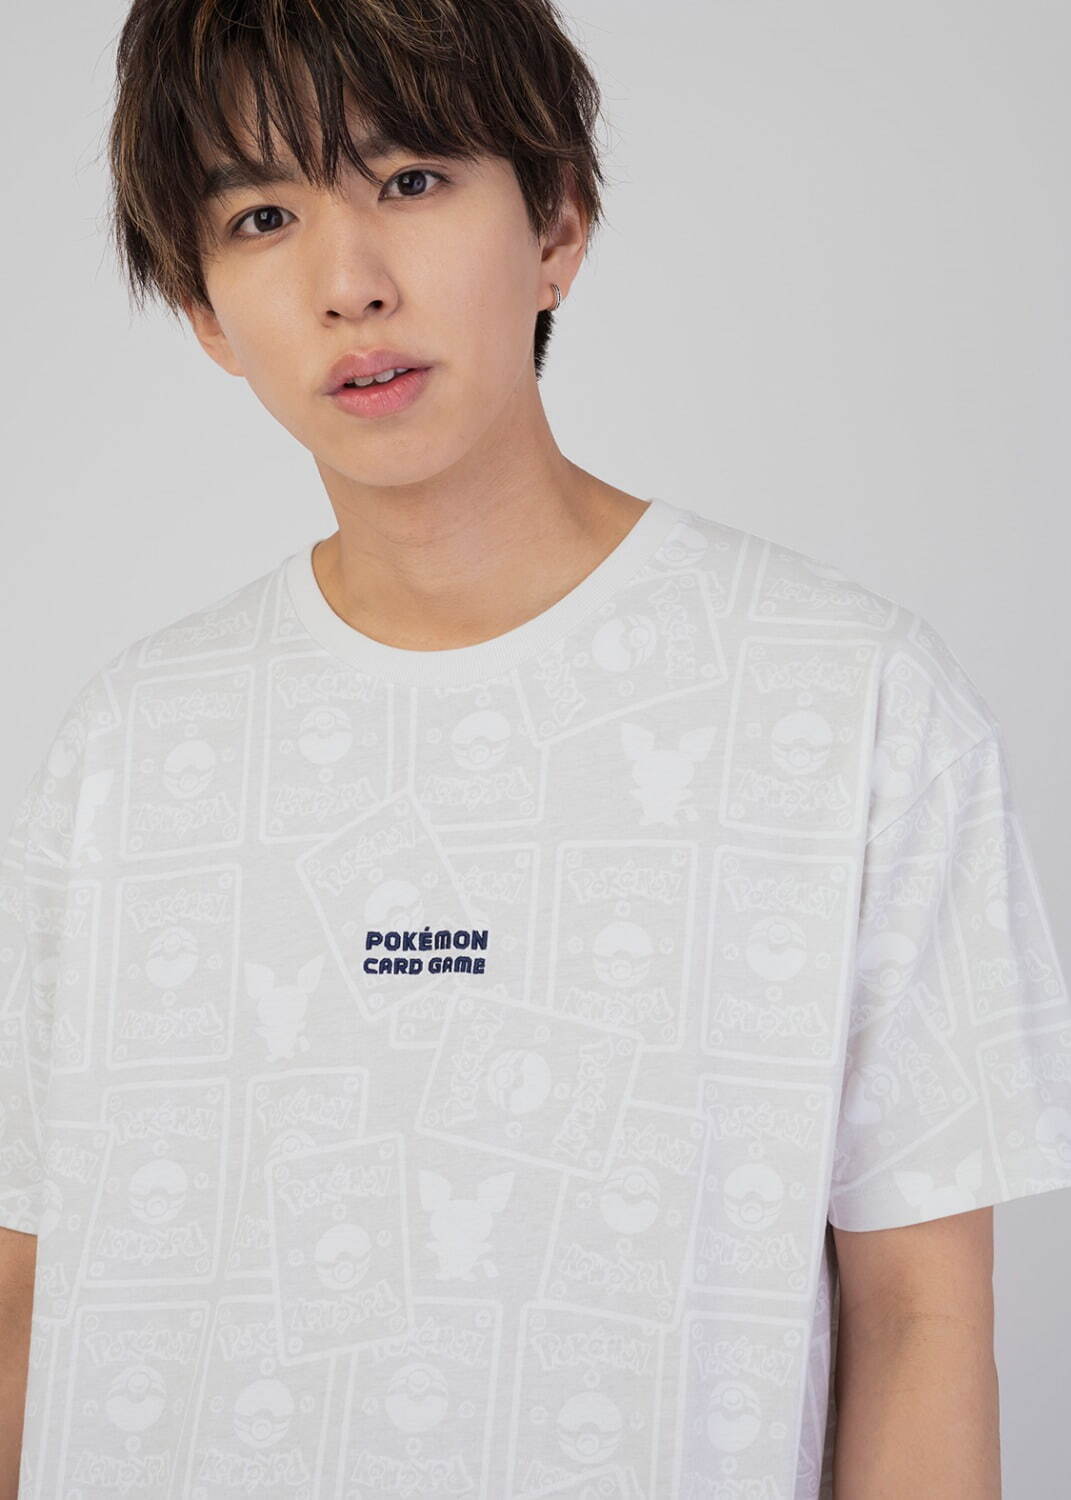 Tシャツ「ポケモンカード パターン」3,500円